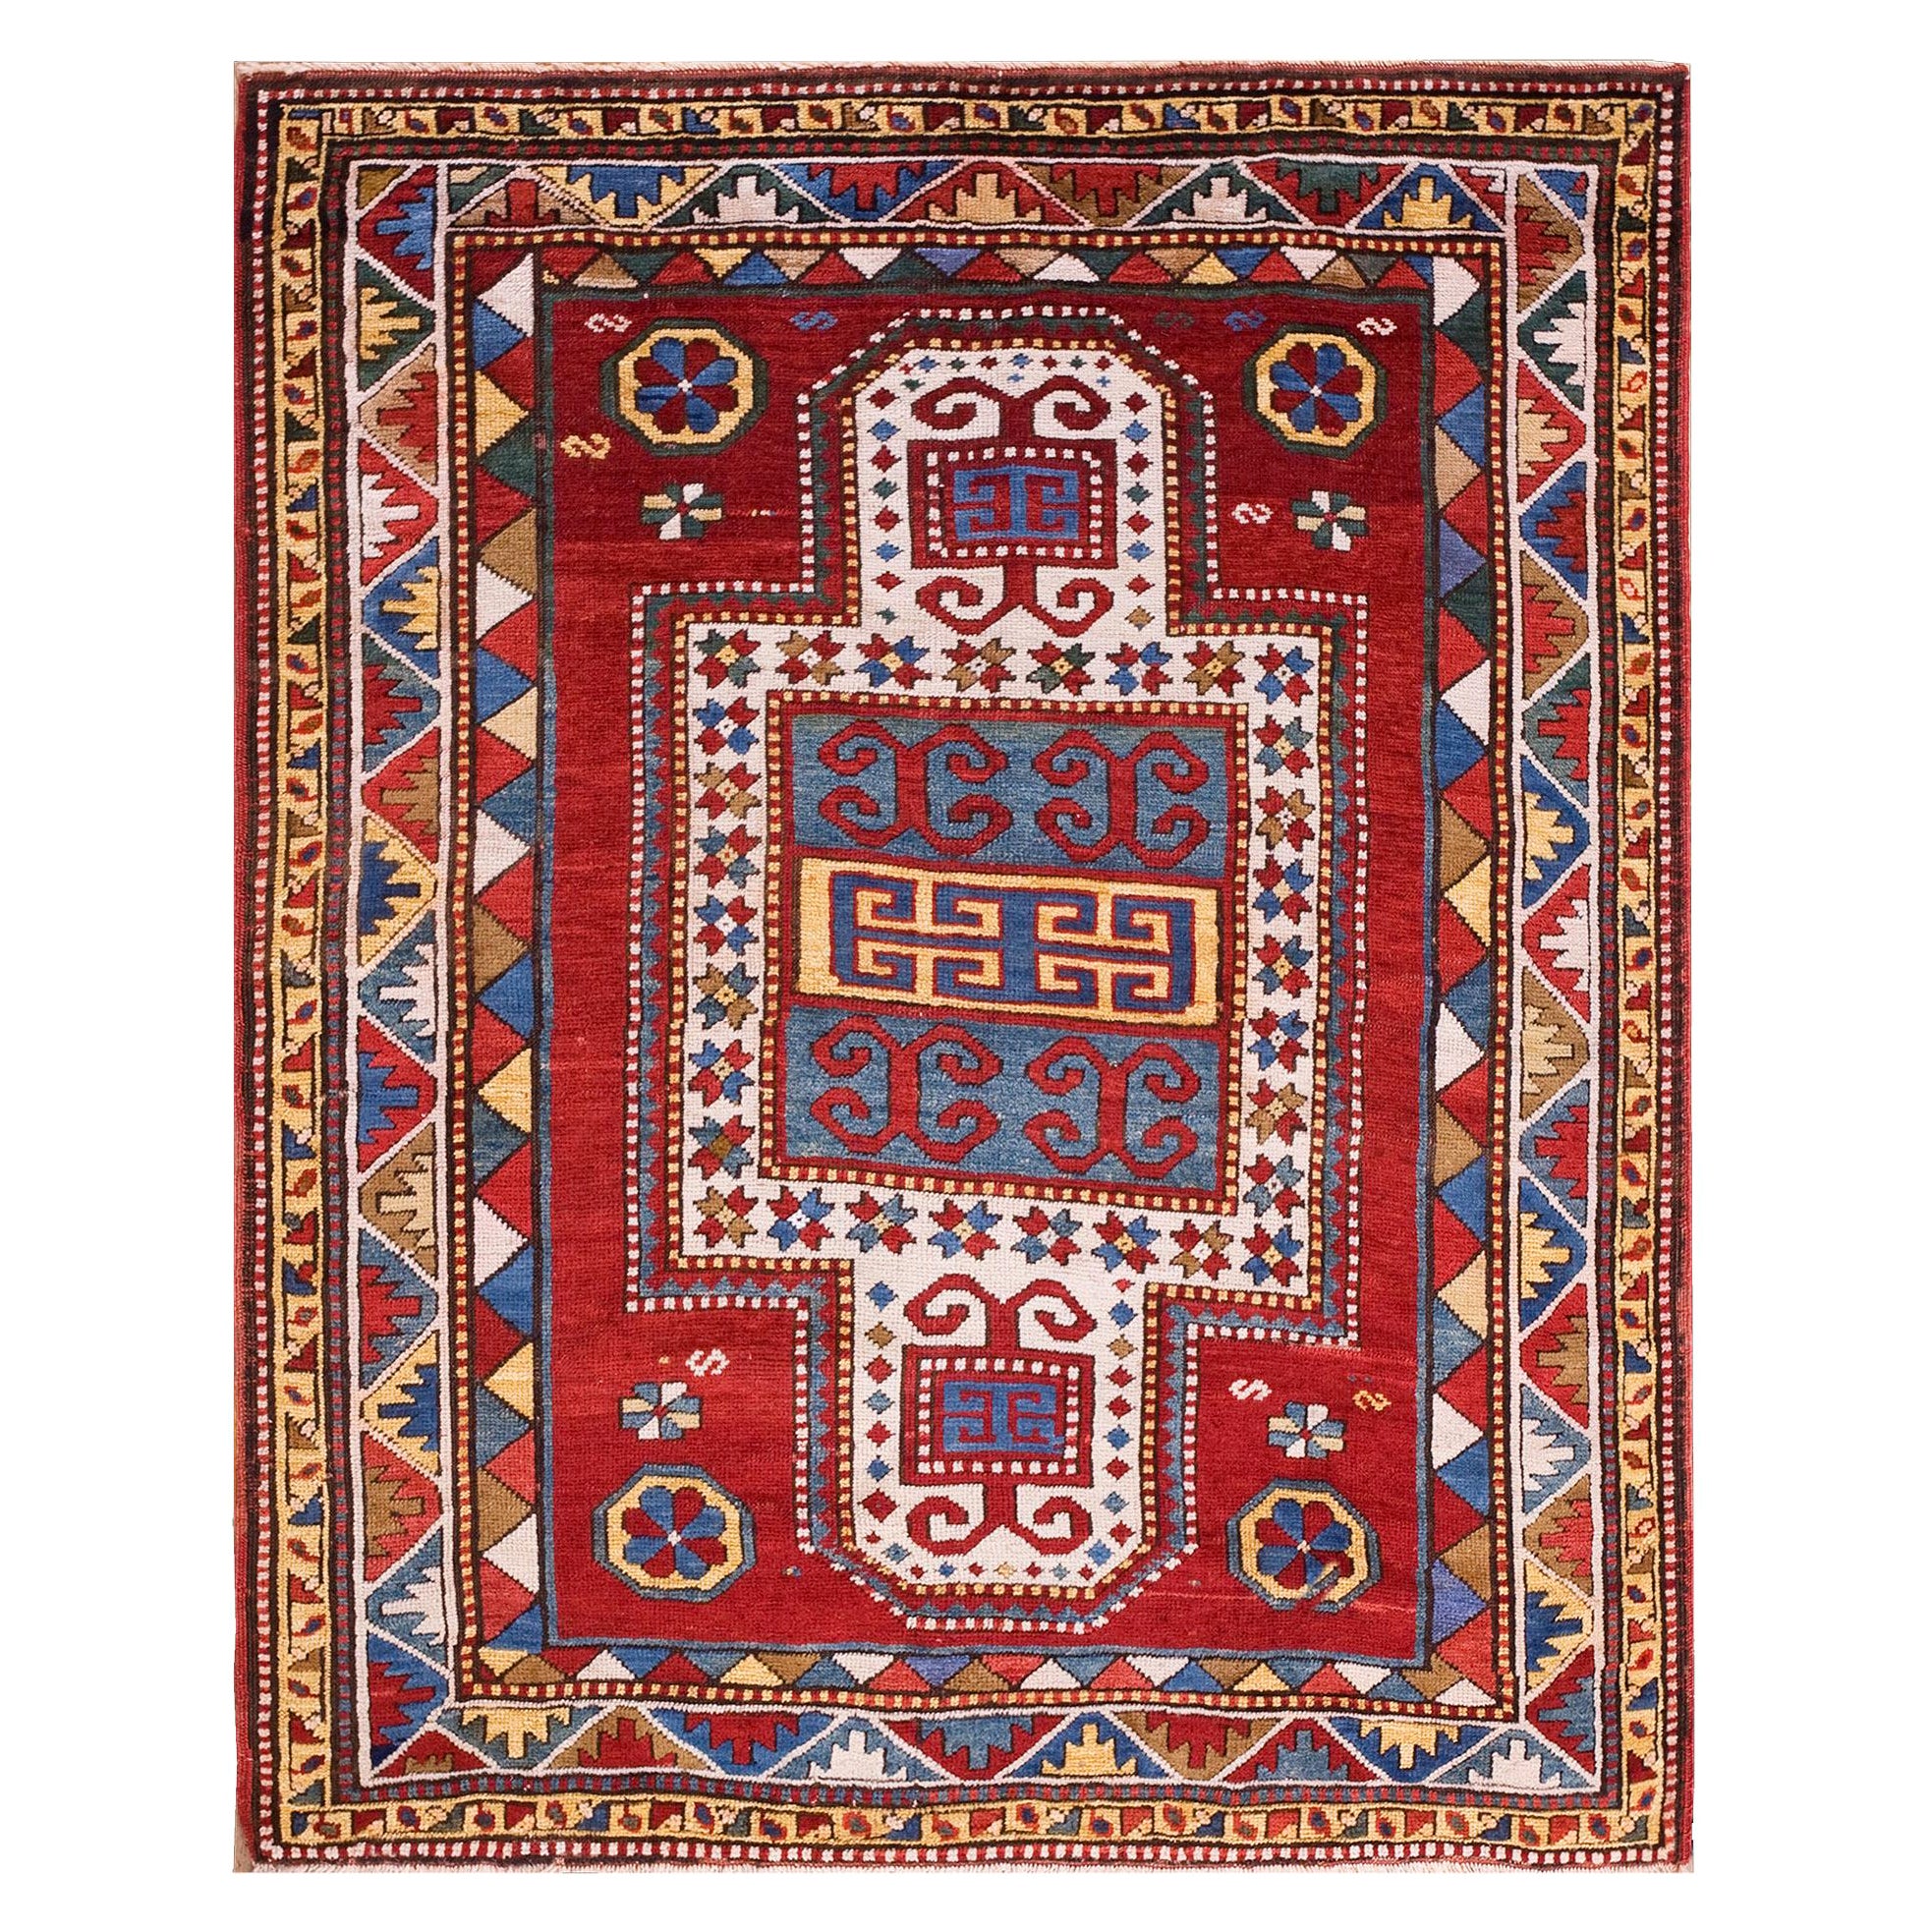 Antique Caucasian, Kazak Rug 4' 4" x. 5' 3"